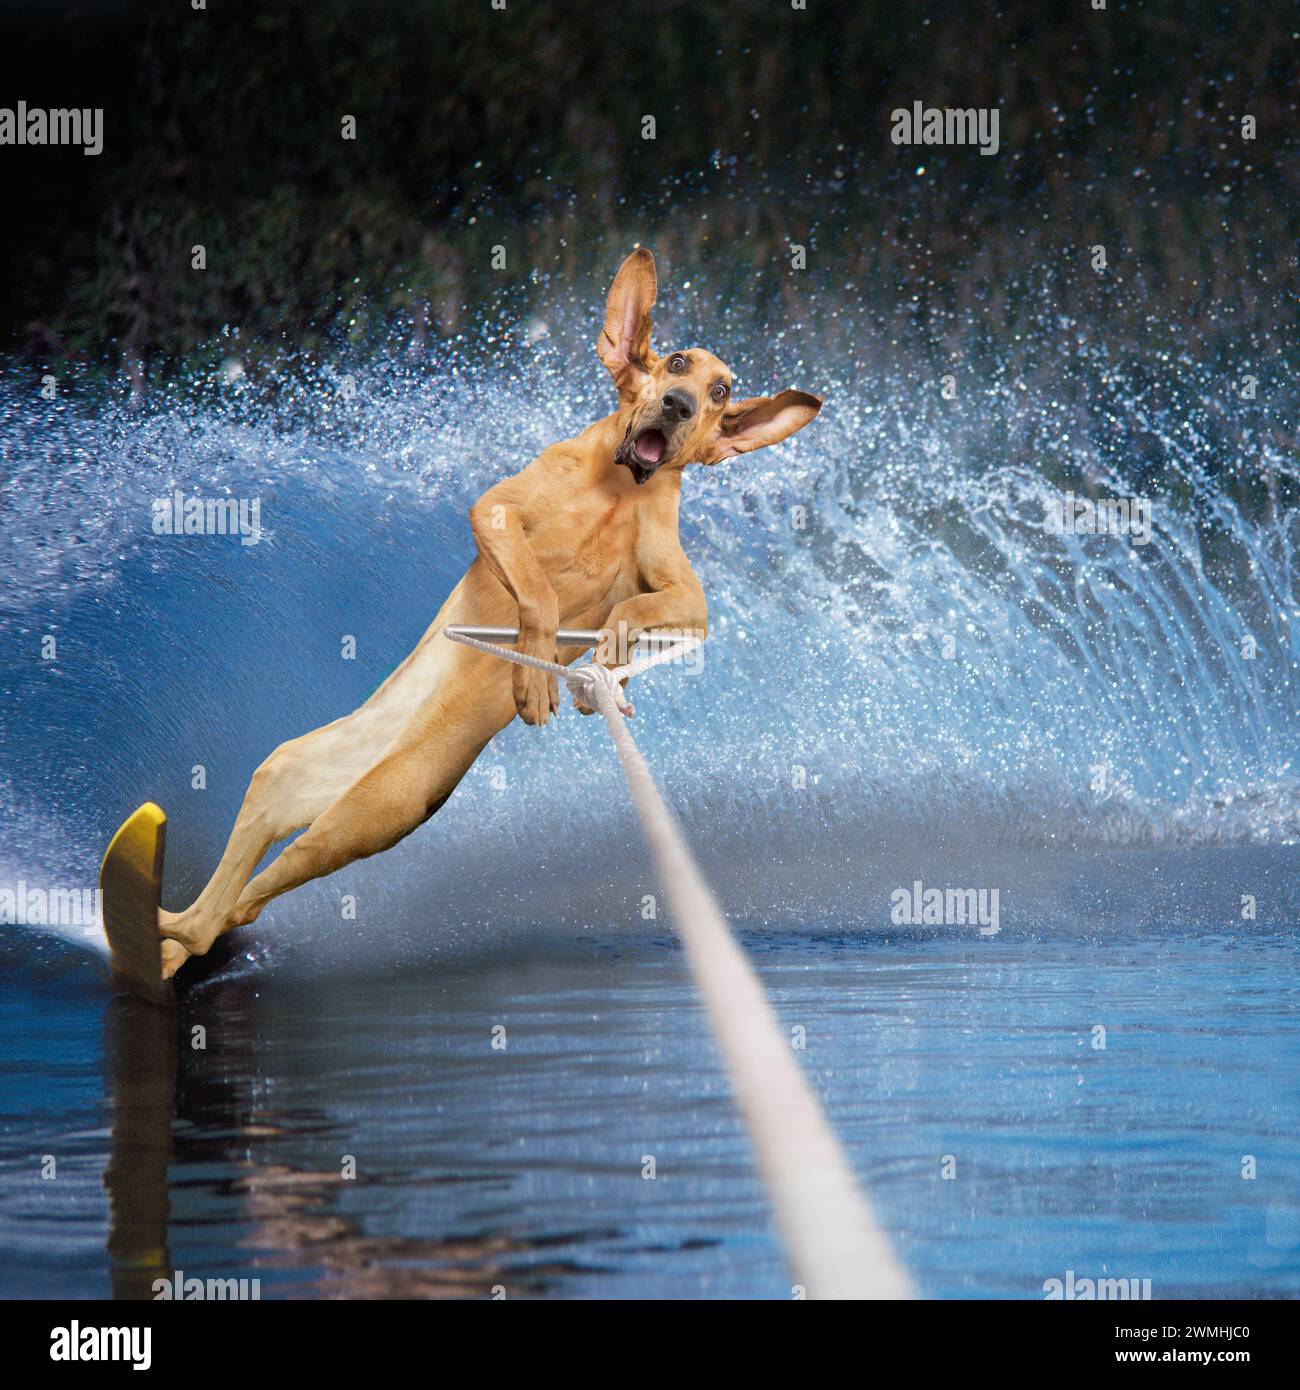 Un drôle de chien Bloodhound déclenche un énorme sillage alors qu'il slalom ski nautique à travers un lac dans une image de concepts de chien, de dressage et de tours inattendus. Banque D'Images